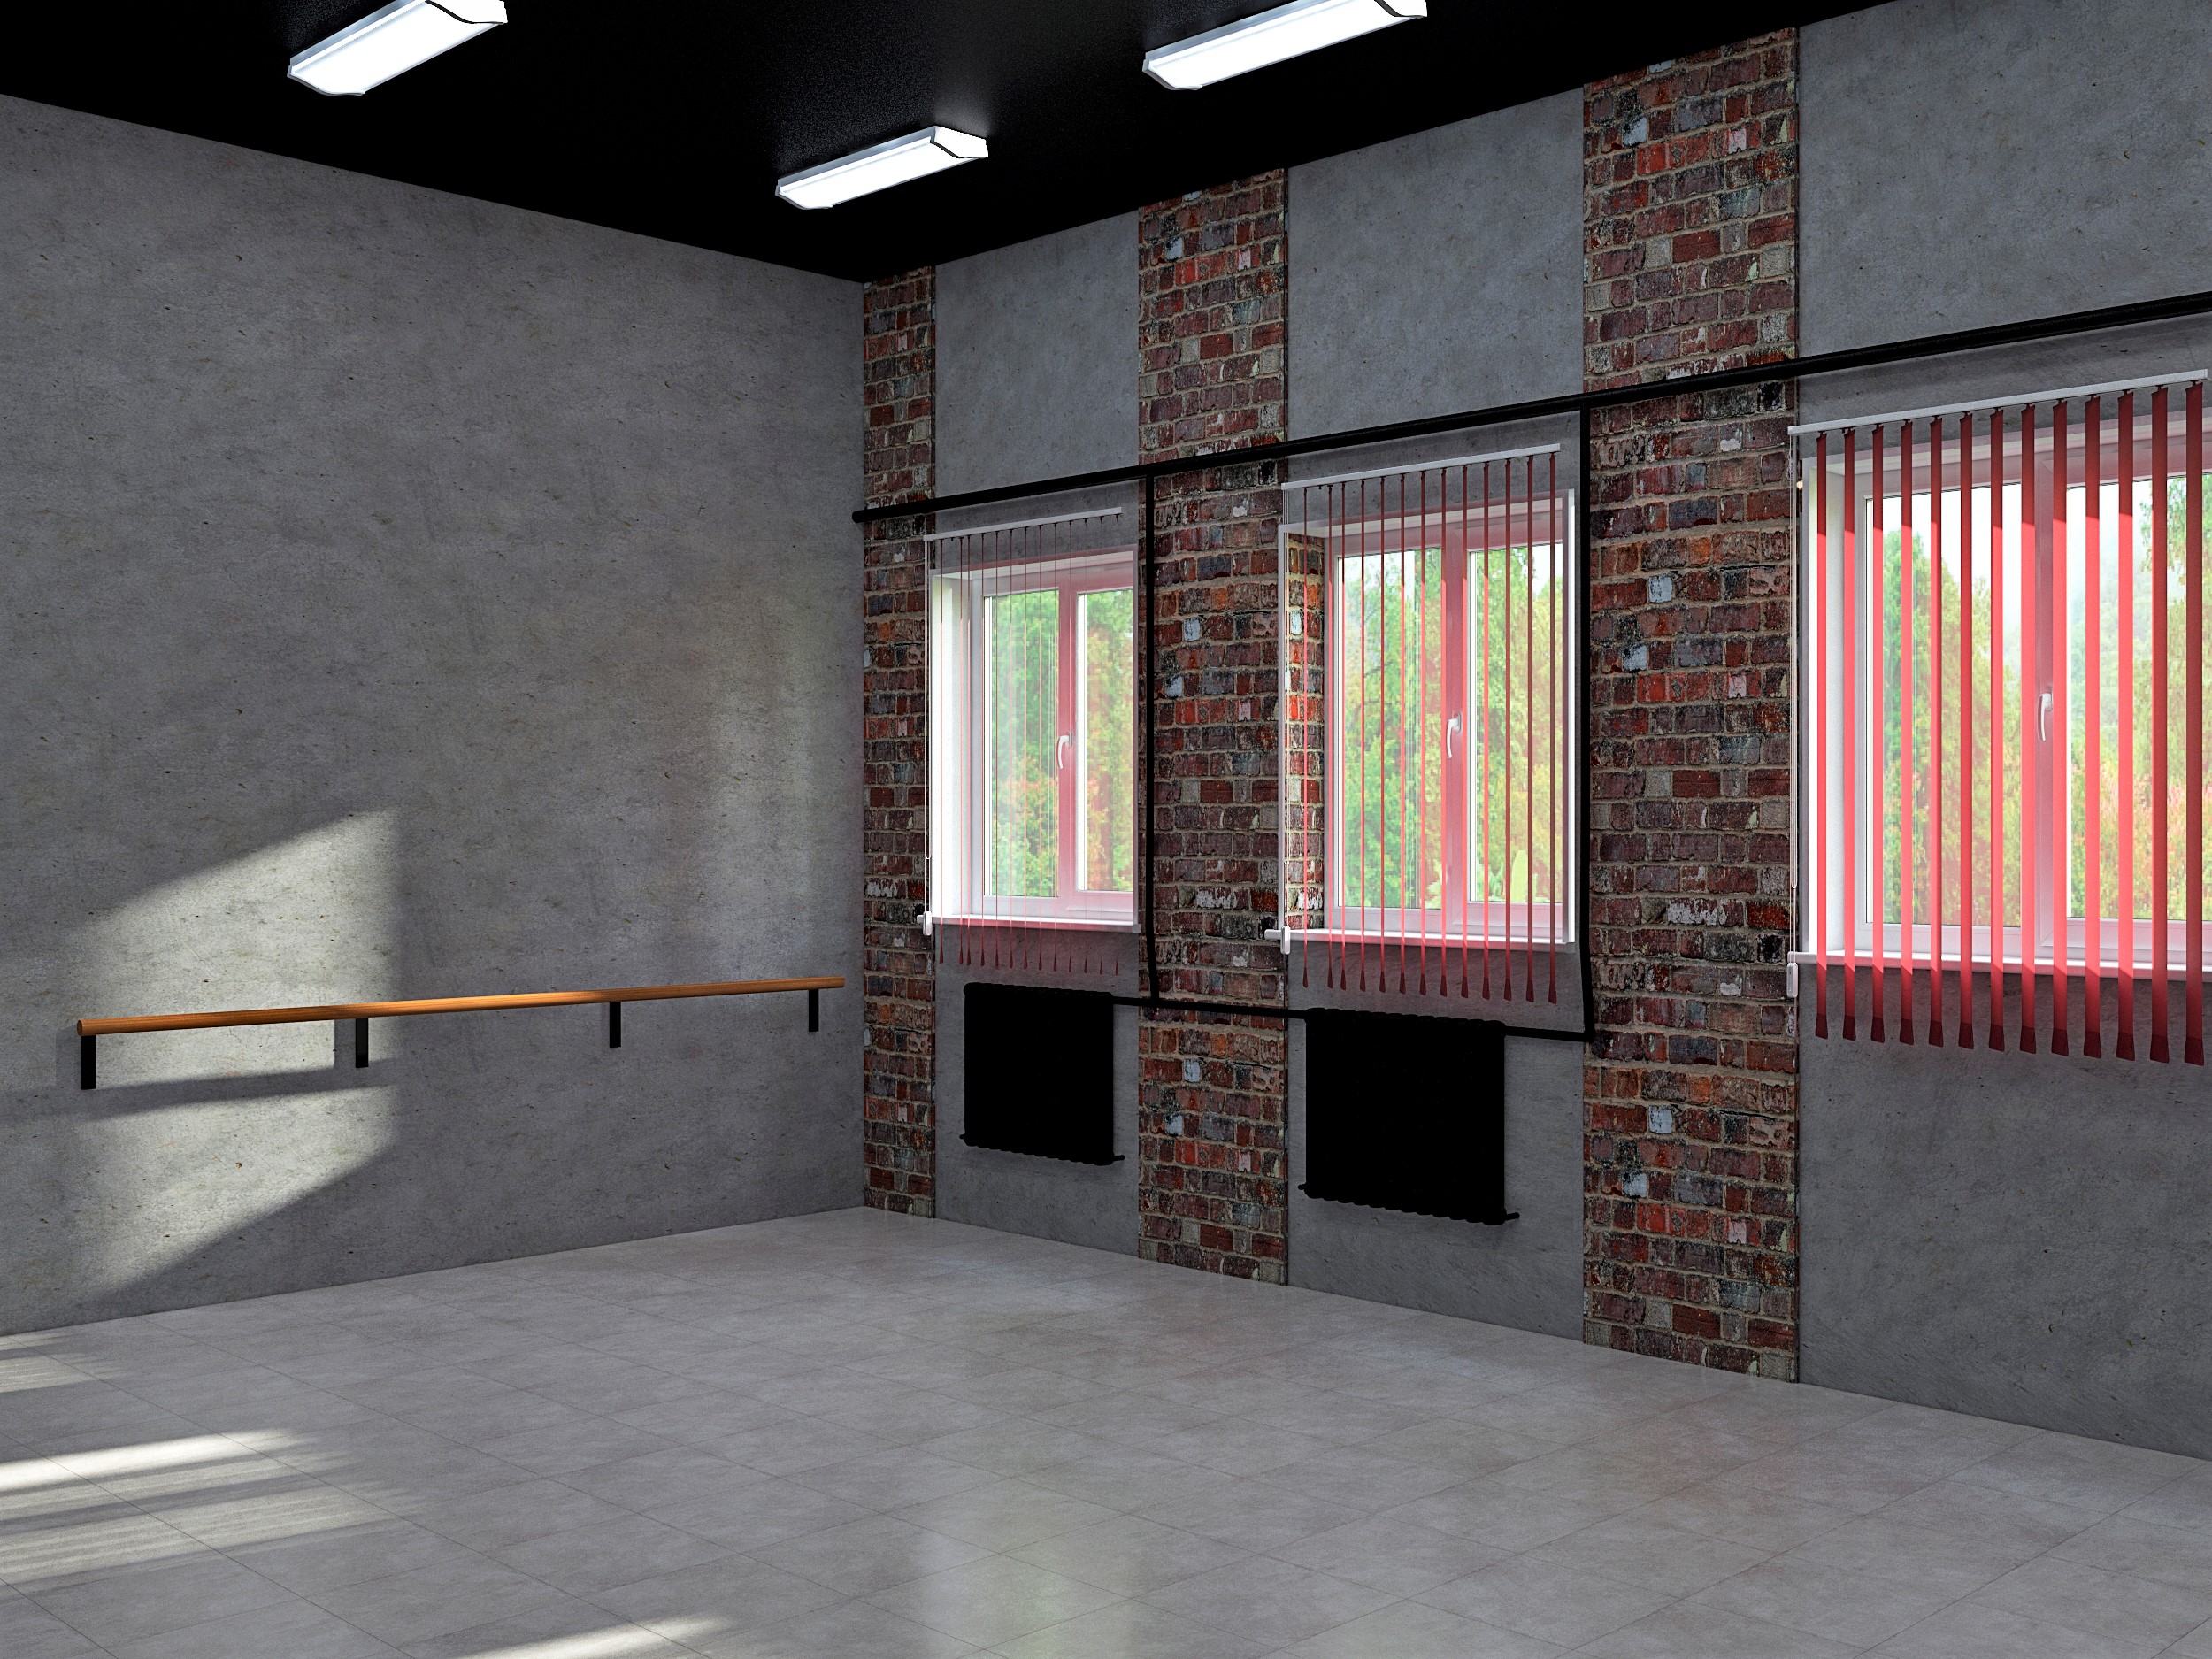 मॉस्को क्षेत्र में एक माध्यमिक विद्यालय में एक डांस हॉल की डिजाइन परियोजना 3d max vray 3.0 में प्रस्तुत छवि